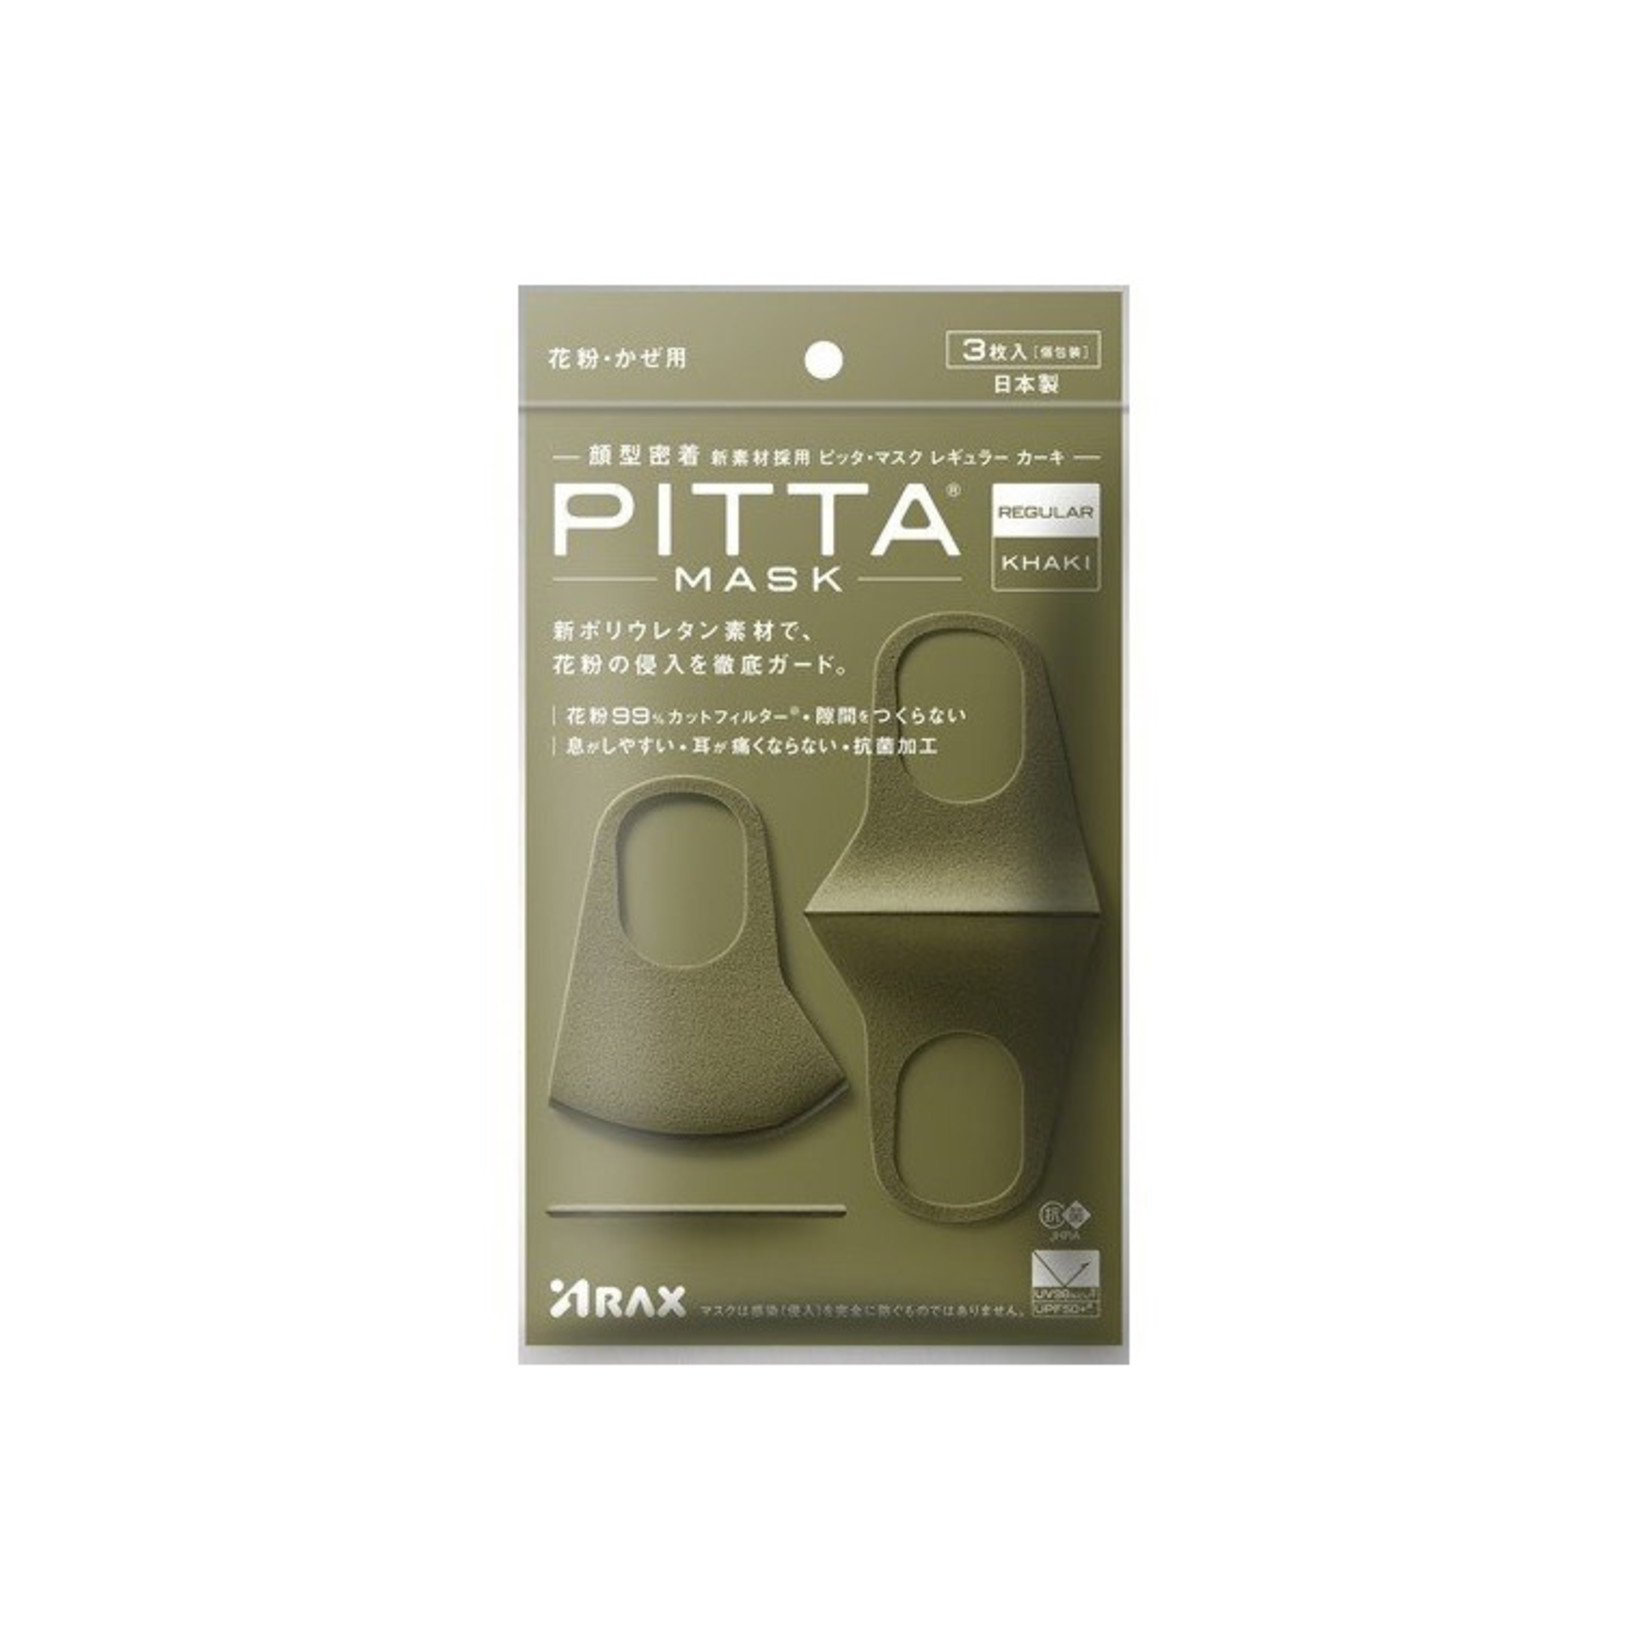 Arax Pitta Mask - Khaki New